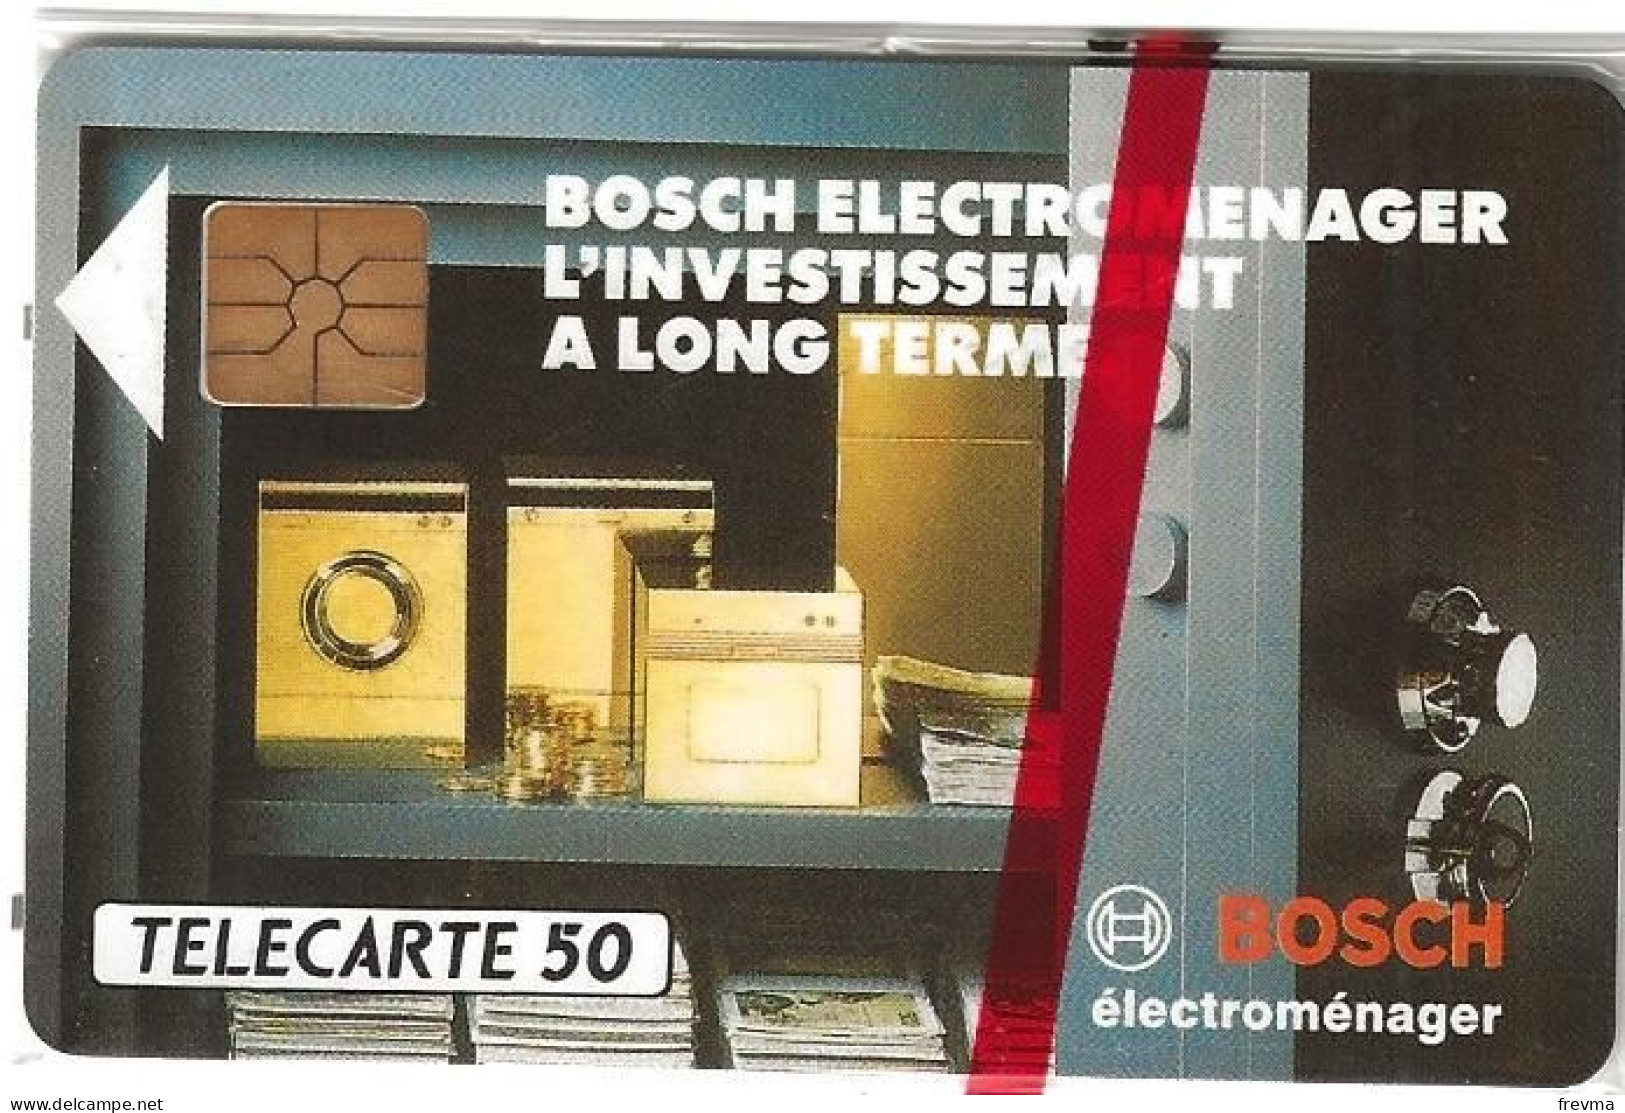 Telecarte E330 Bosch Electromenager 50 Unités NSB GEM - Telefoonkaarten Voor Particulieren